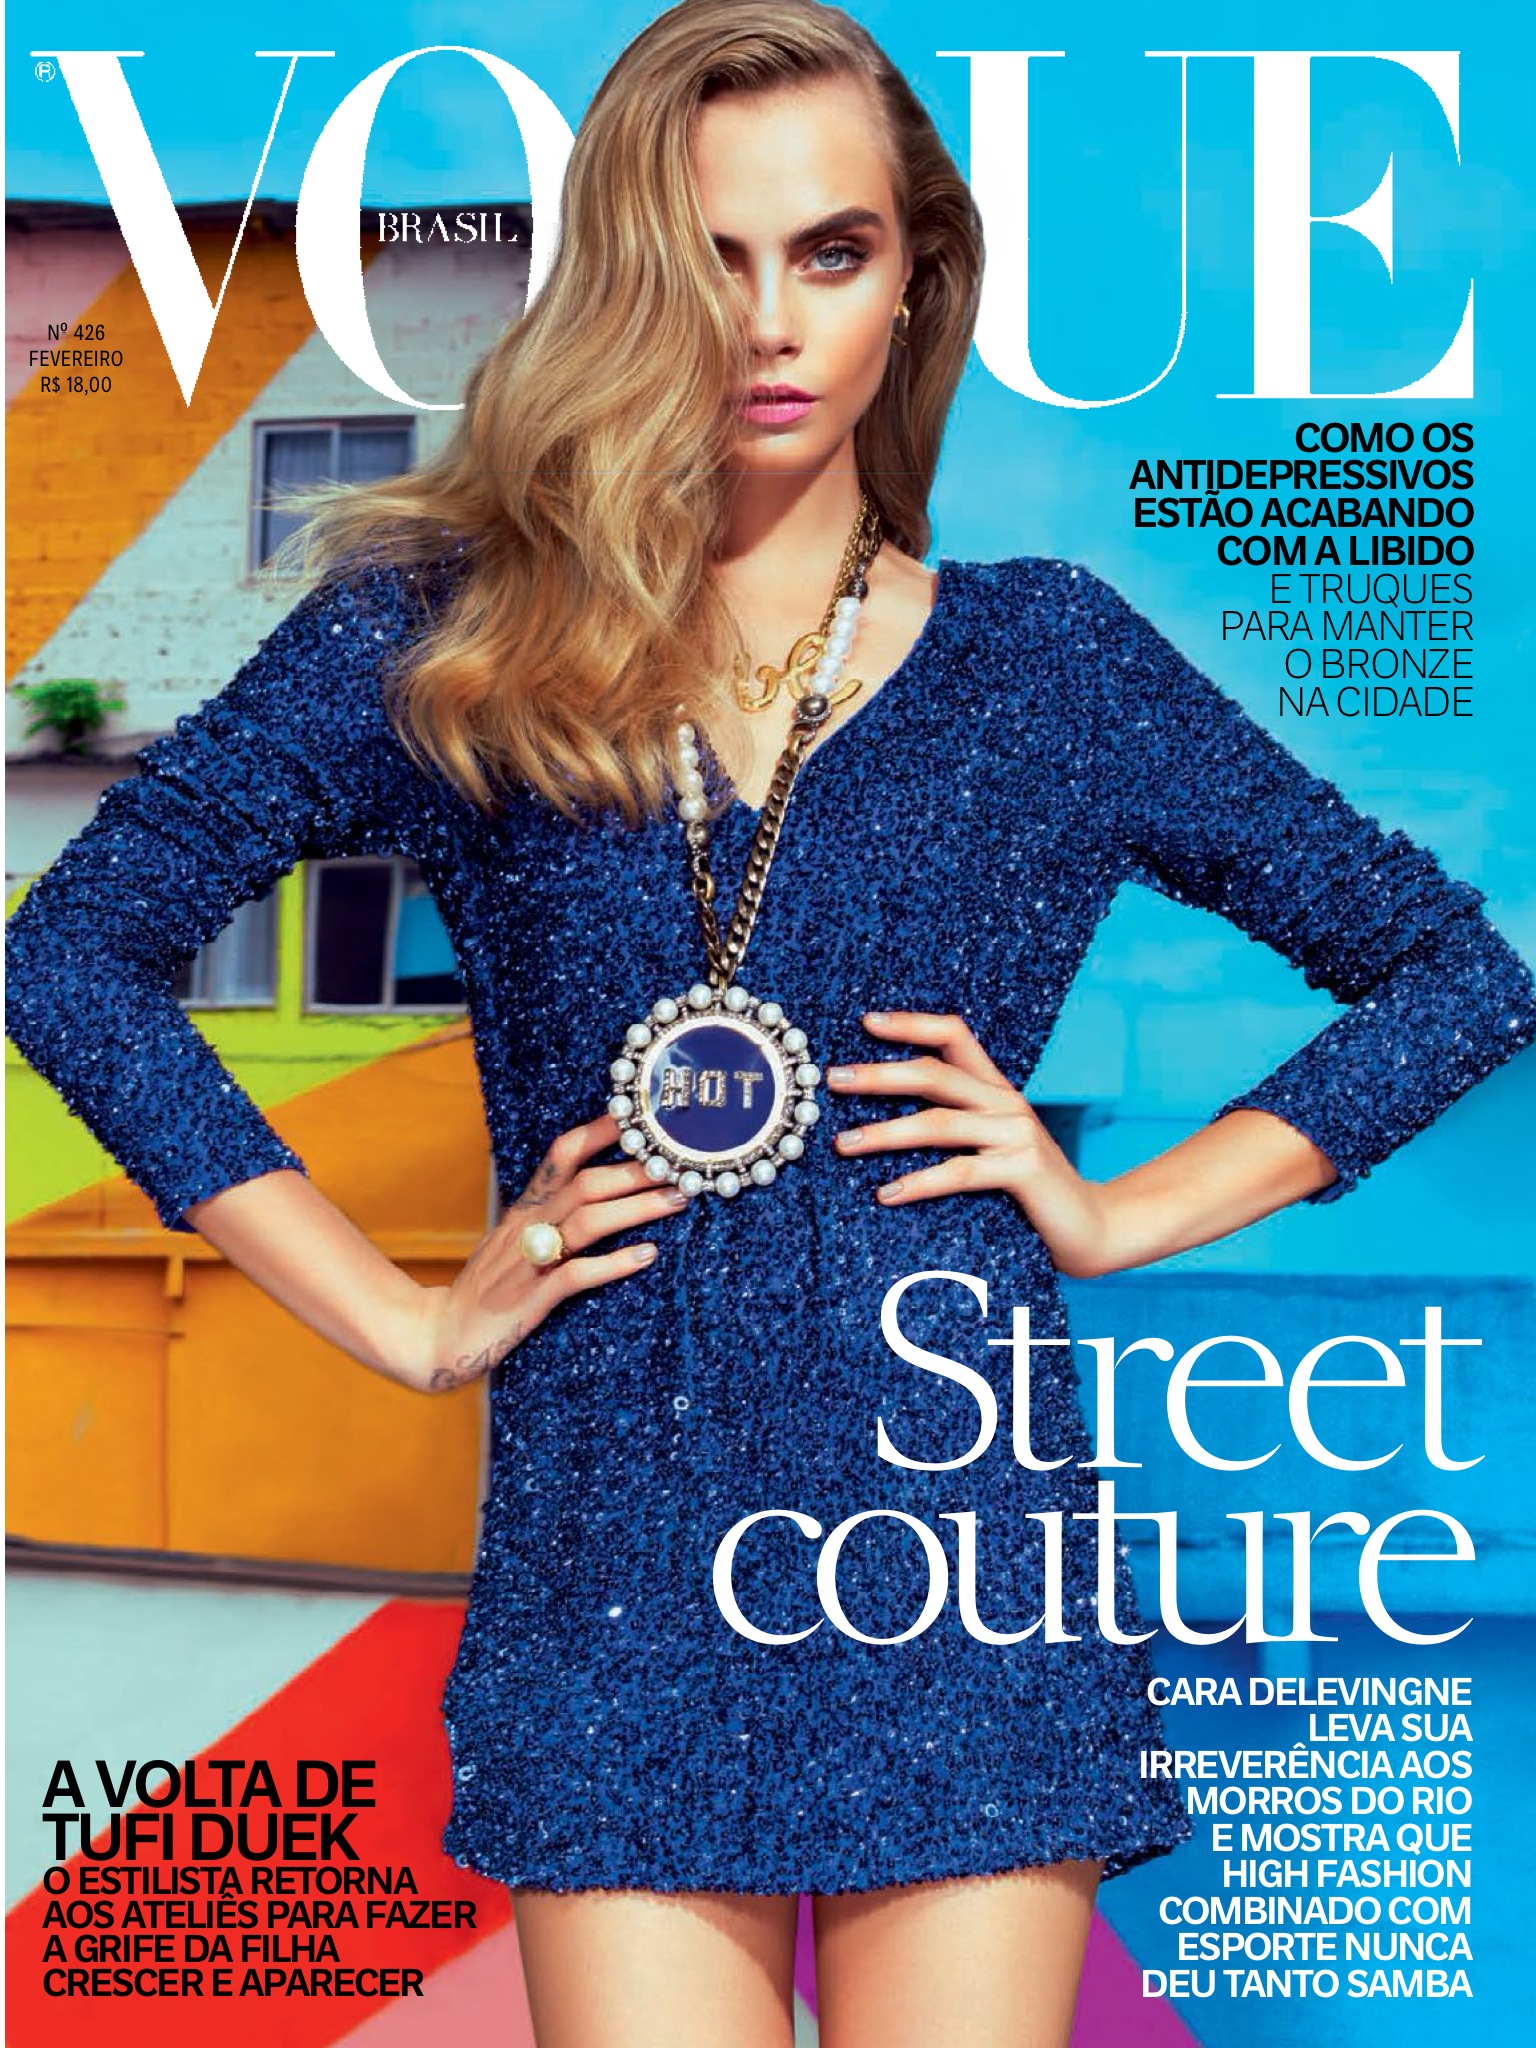 Vogue-Brasil-Cover.jpg